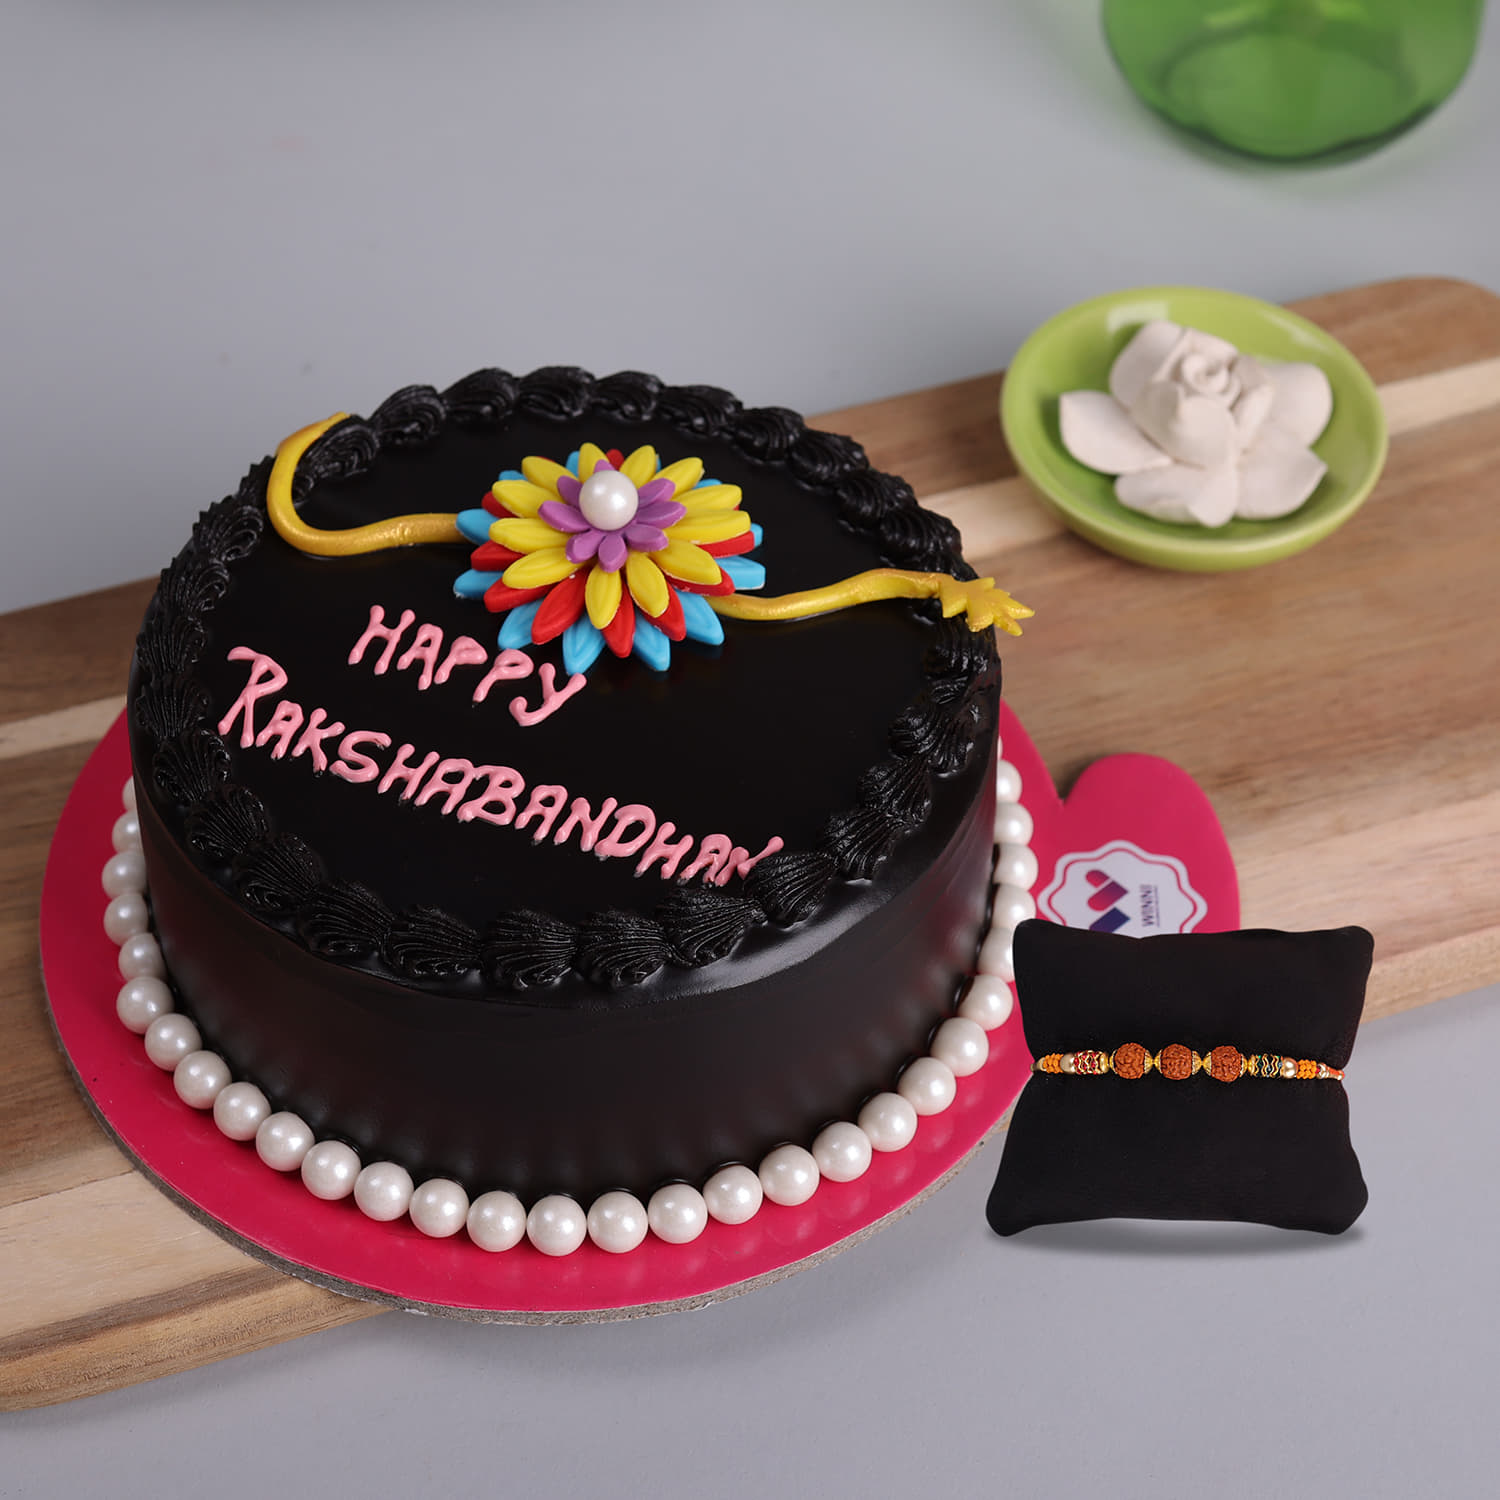 Mango Rakshabandhan 1 kg cake